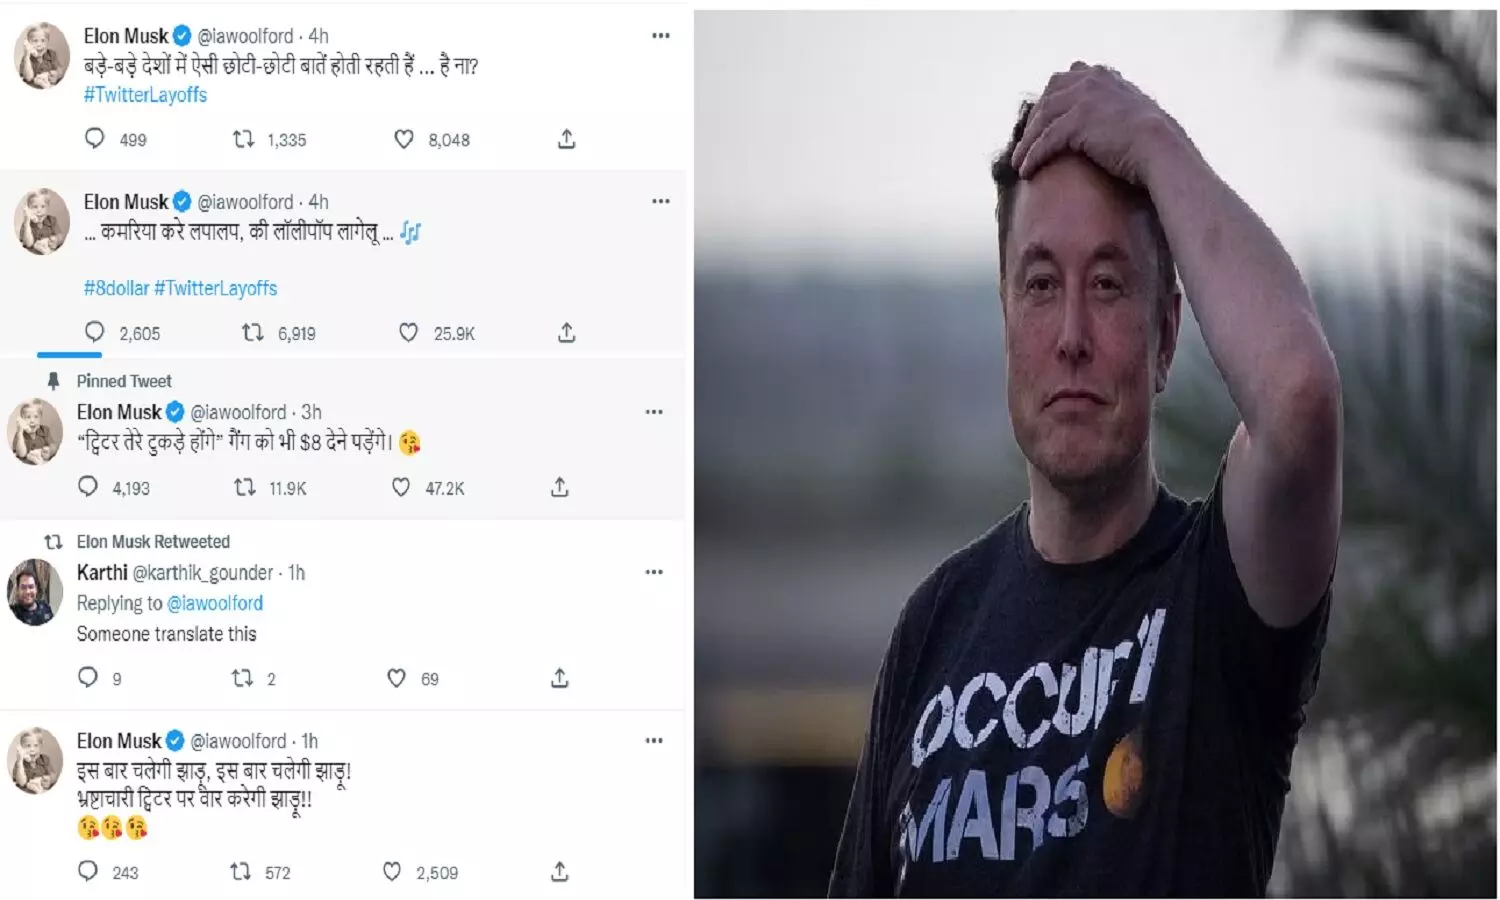 Elon Musk Bhojpuri Tweets: भोजपुरी में ट्वीट कर रहे एलन मस्क! कहीं अकाउंट तो हैक नहीं हो गया?